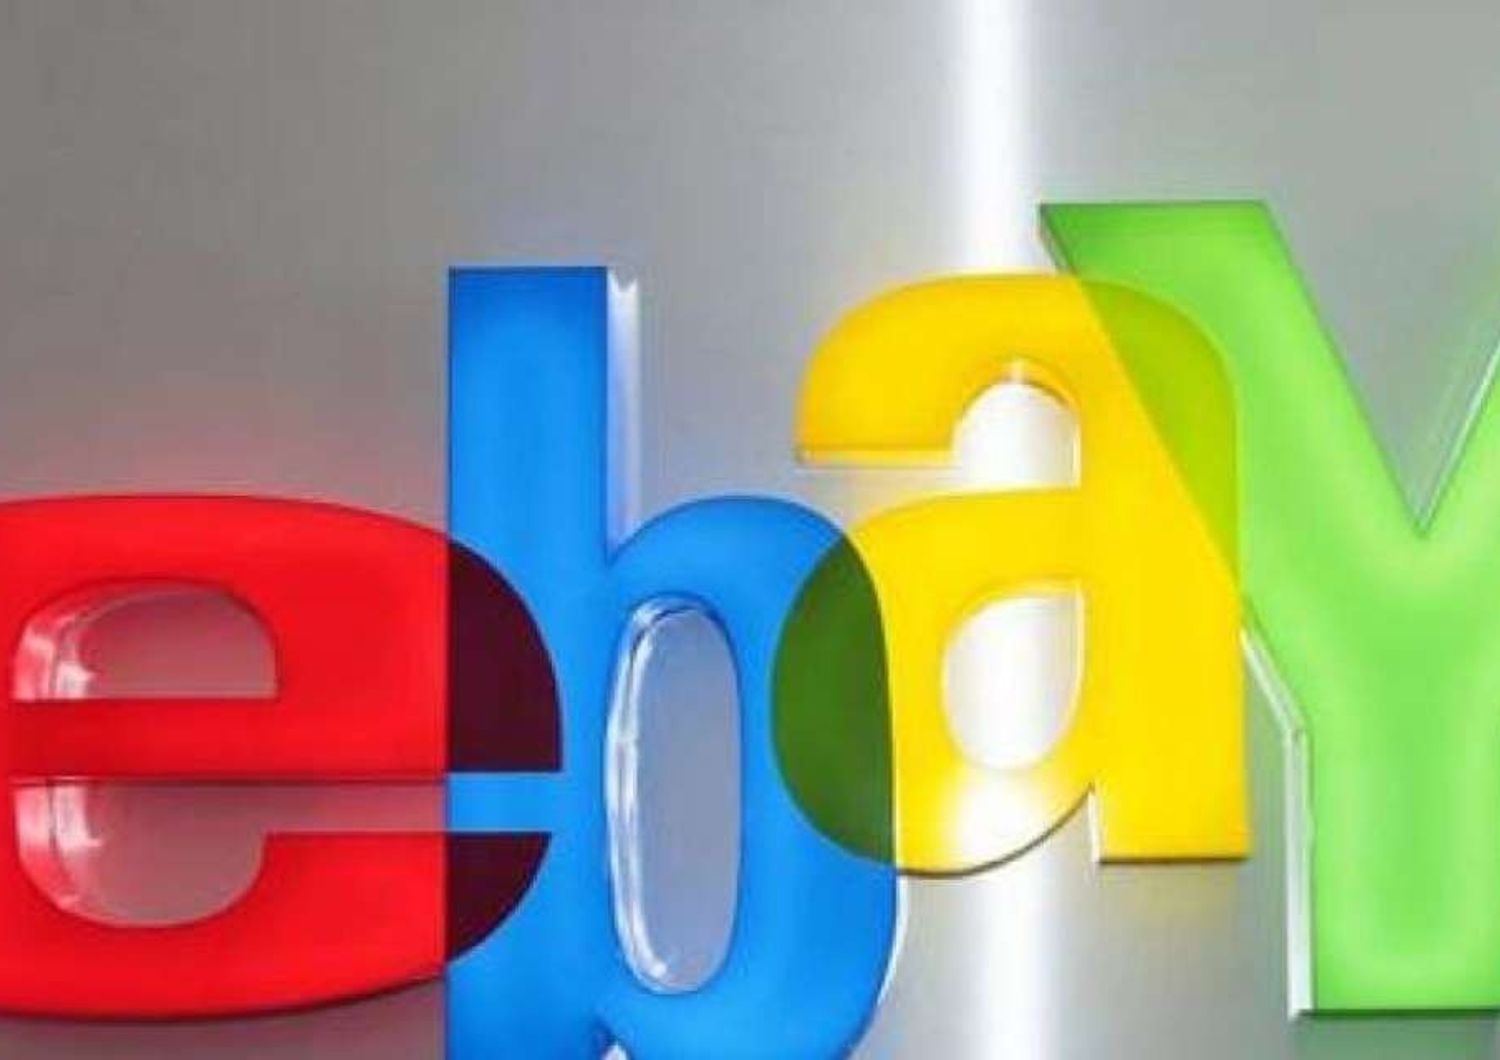 Usa: eBay programma scorporo di PayPal entro il 2015